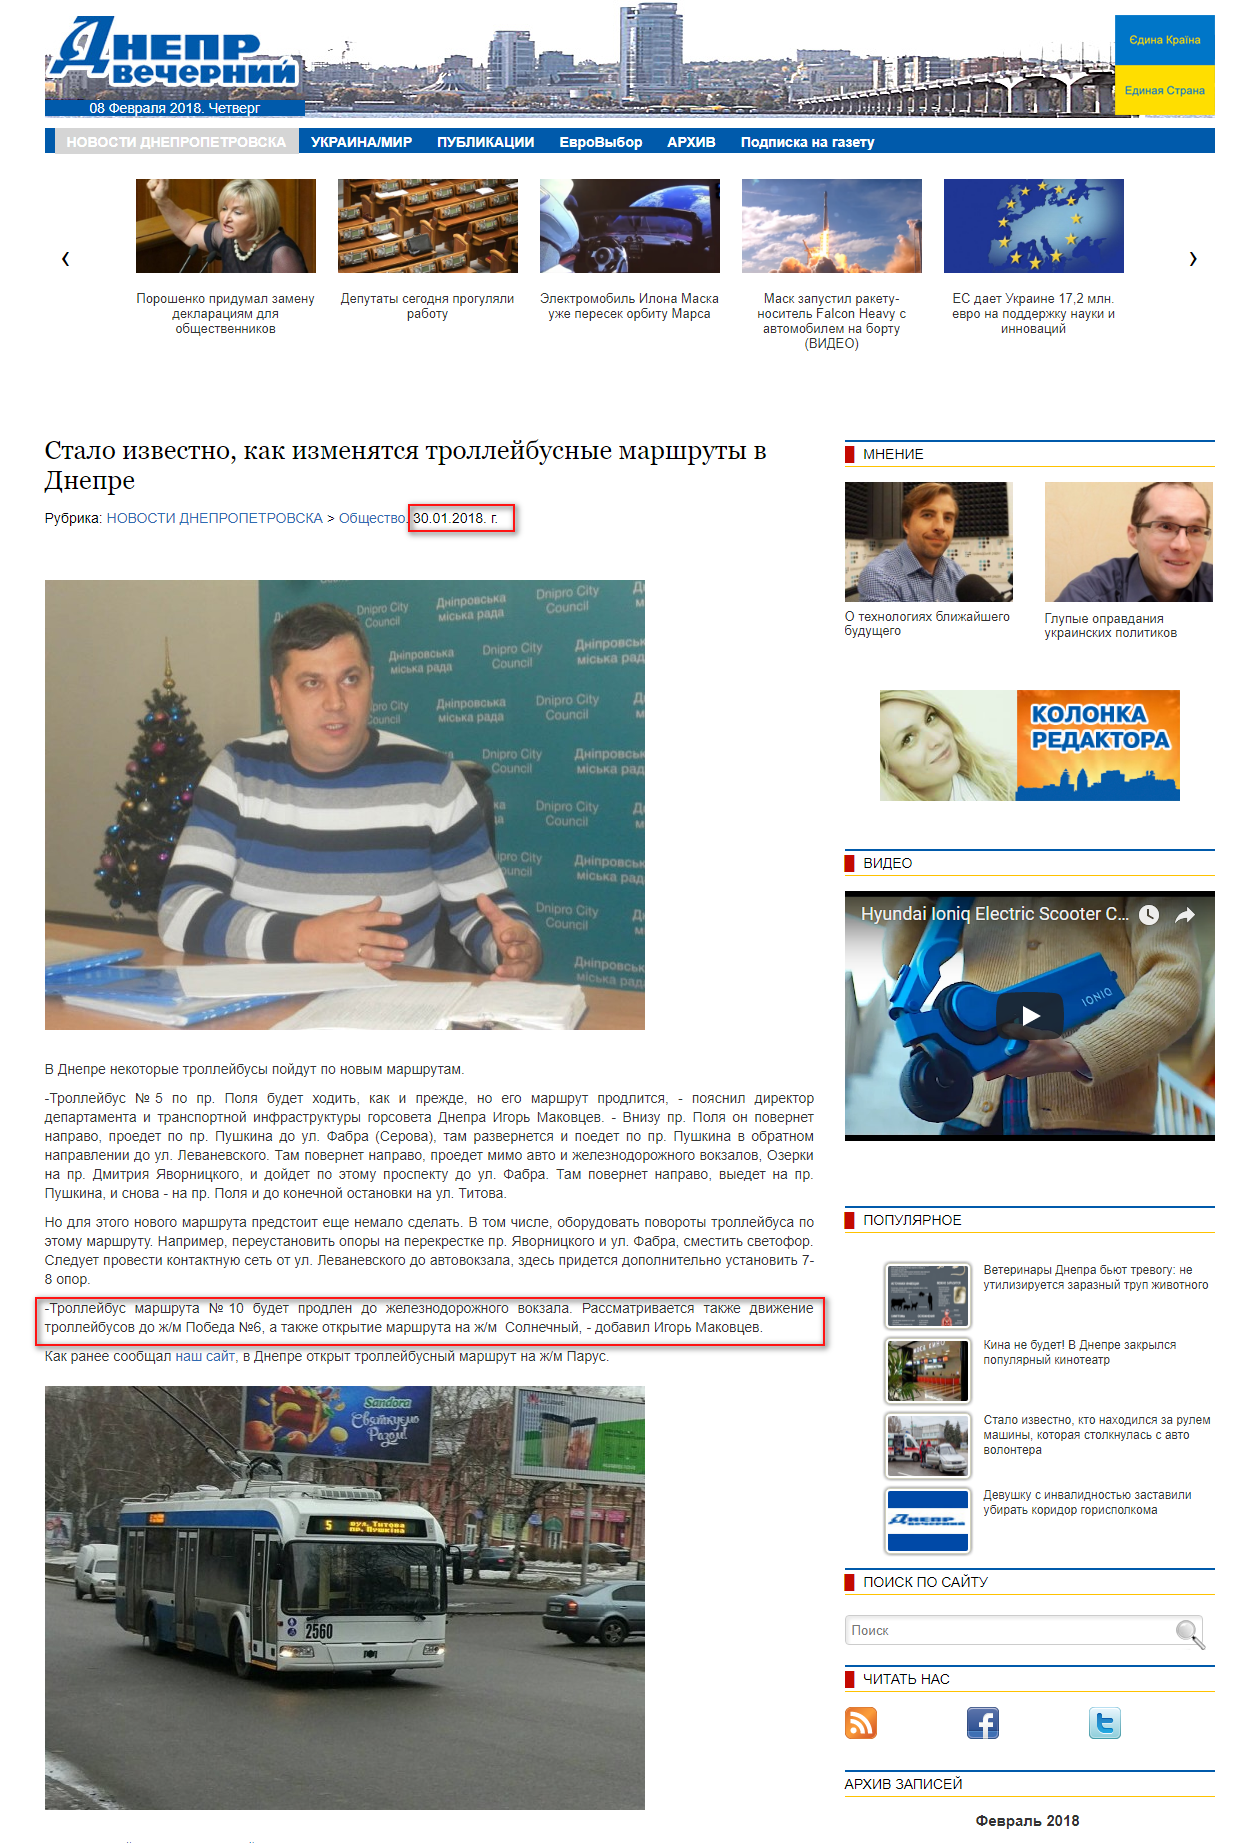 http://dv-gazeta.info/dneprnews/stalo-izvestno-kak-izmenyatsya-trolleybusnyie-marshrutyi-v-dnepre.html